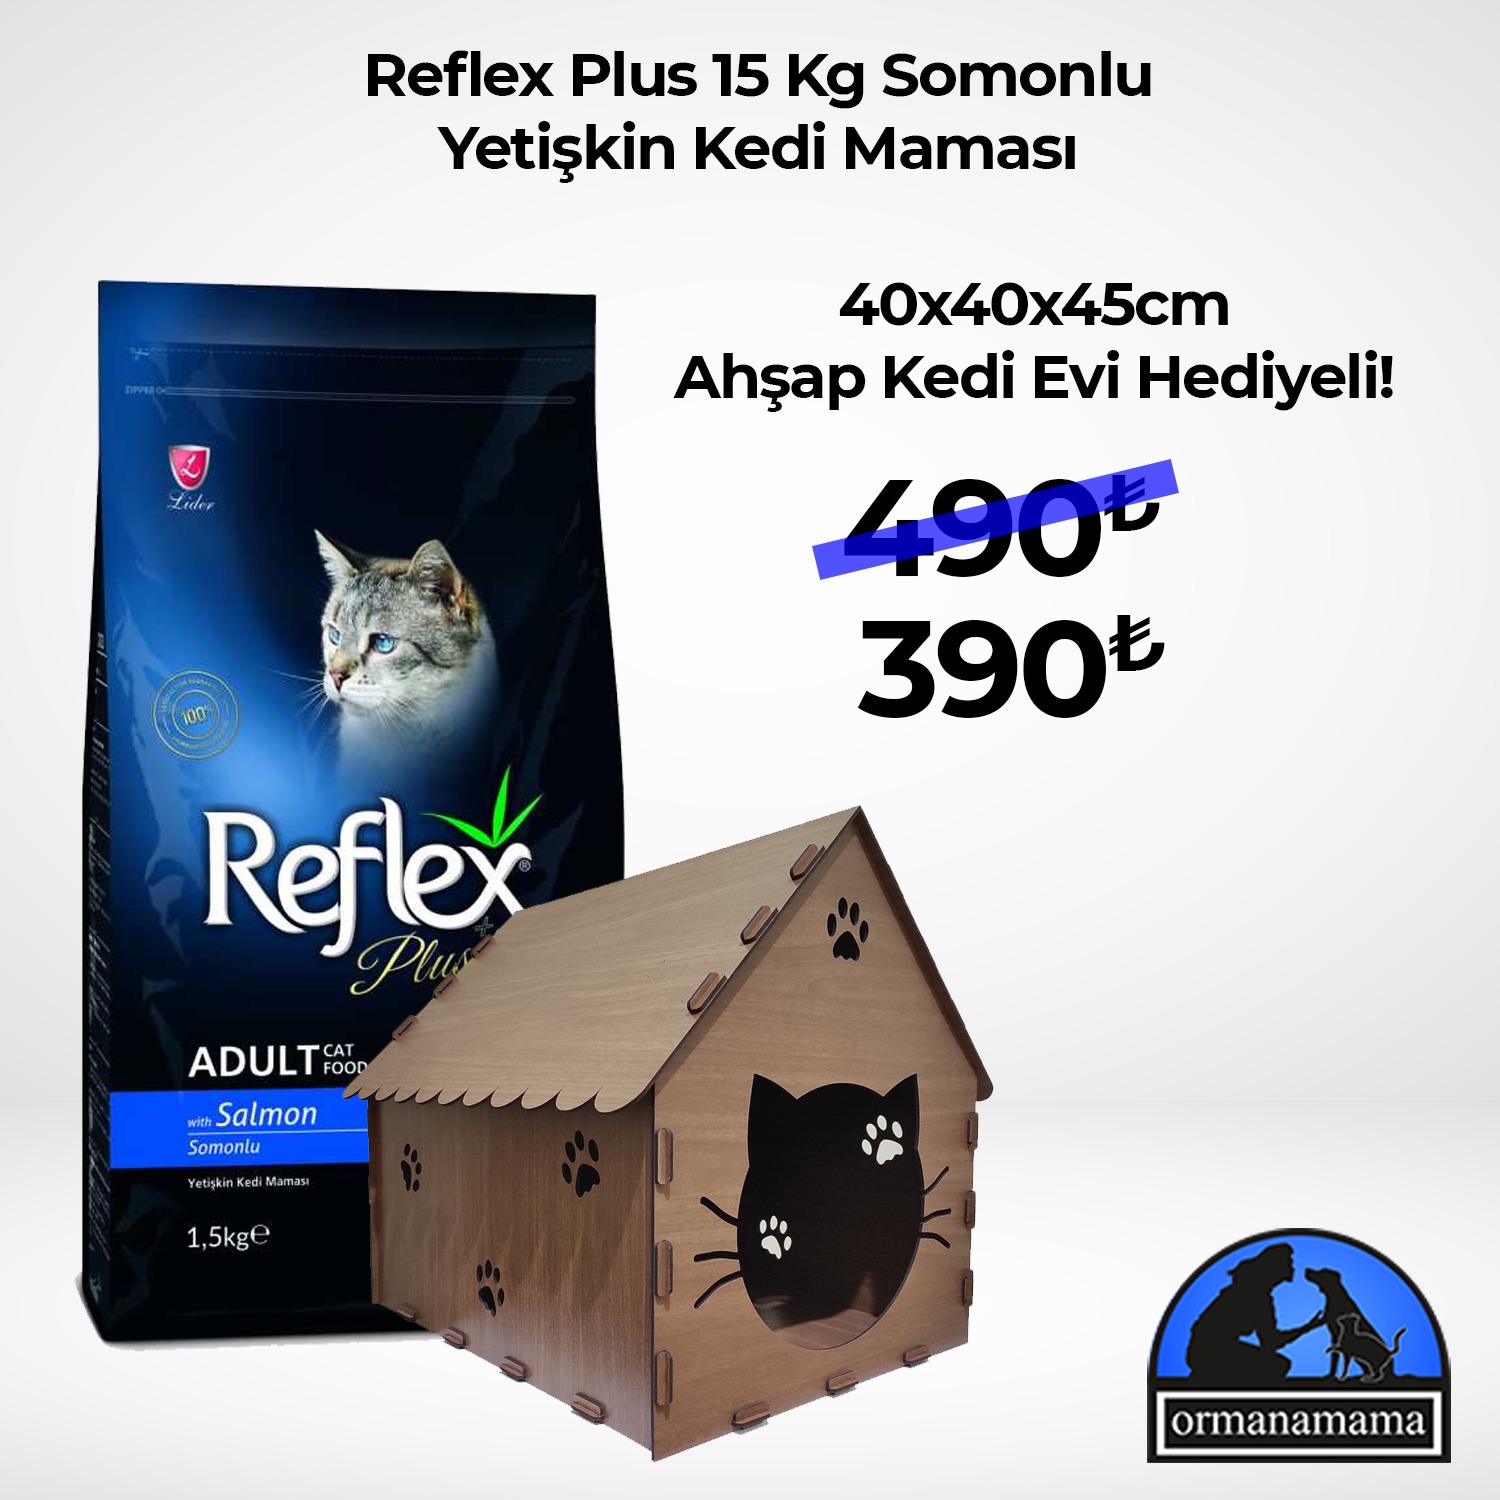 Reflex Plus Kedi Yetişkin Somonlu Kuru Mama 15 Kg + Ahşap Kedi Evi Hediyeli